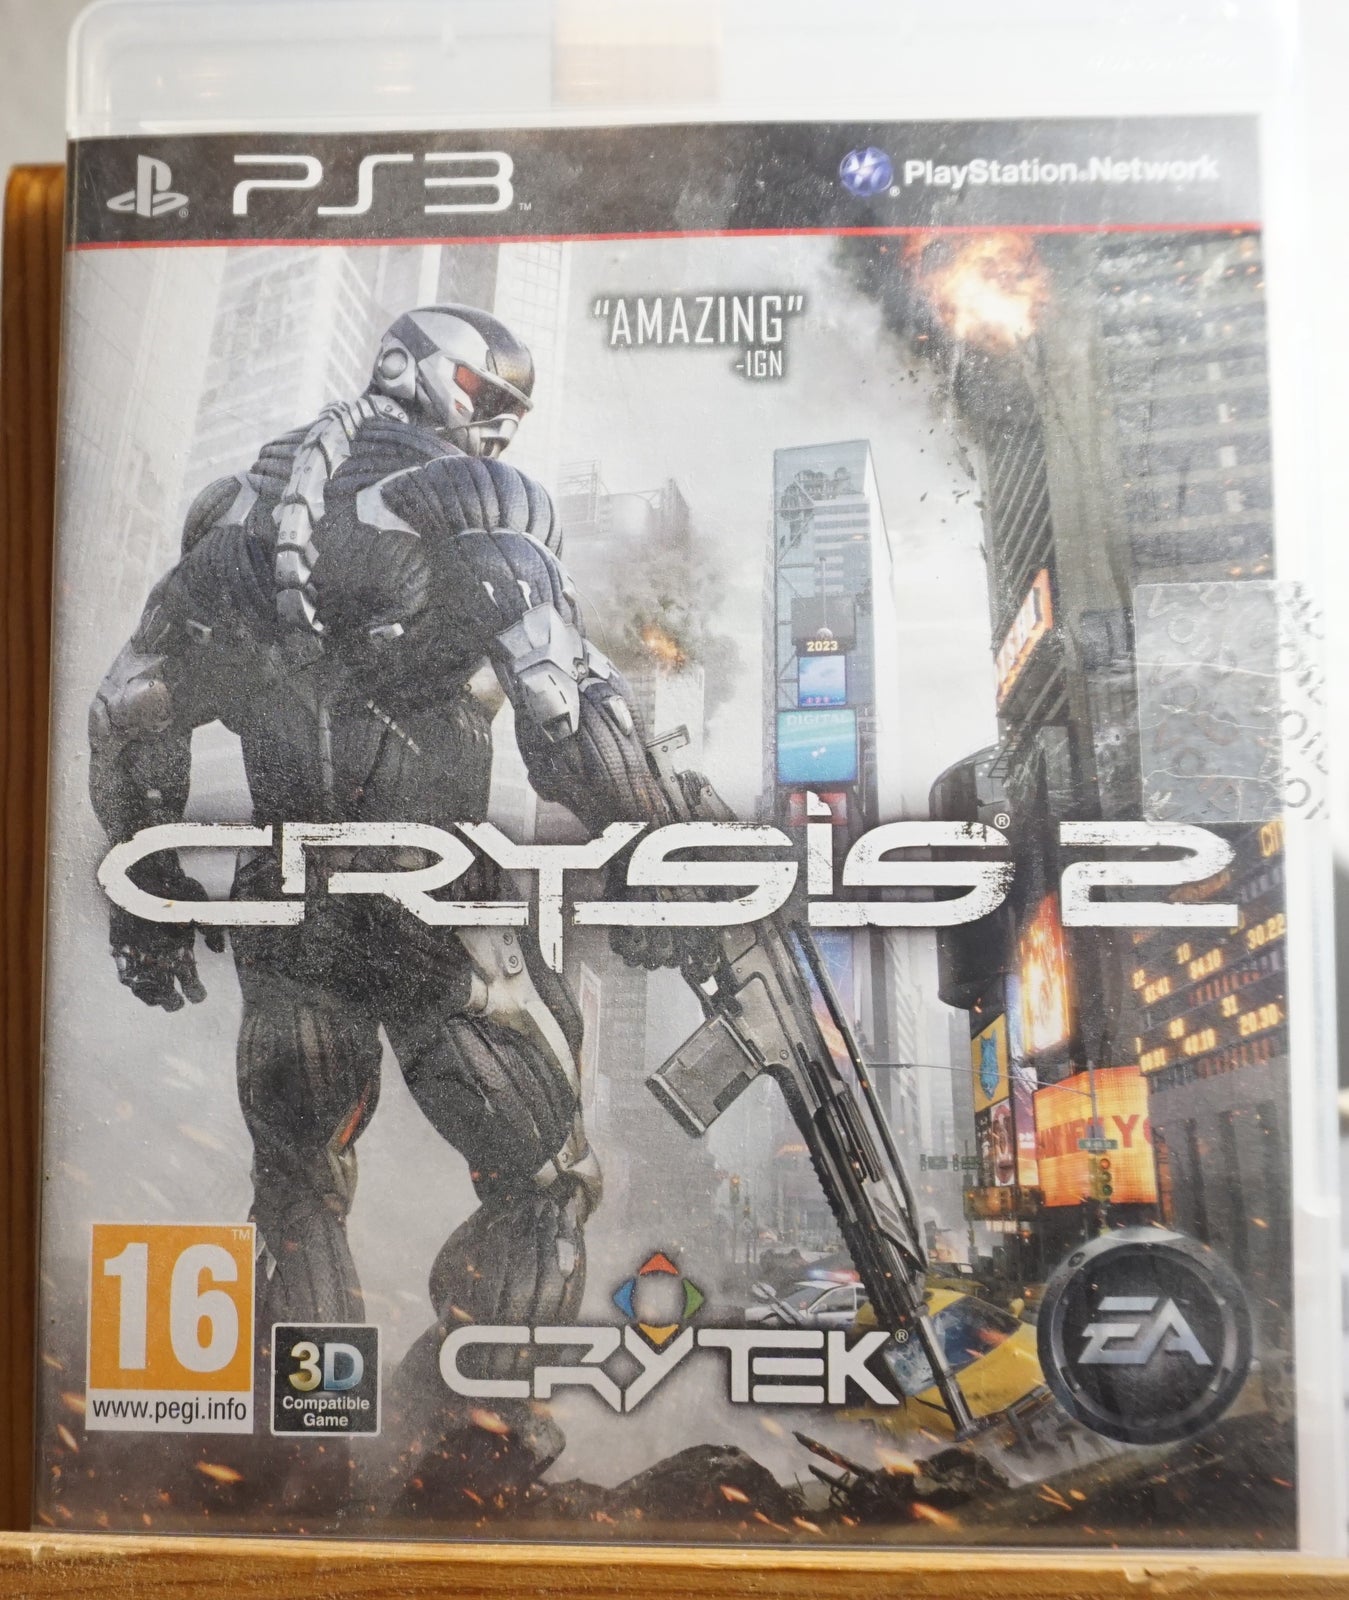 Crysis 2, PS3